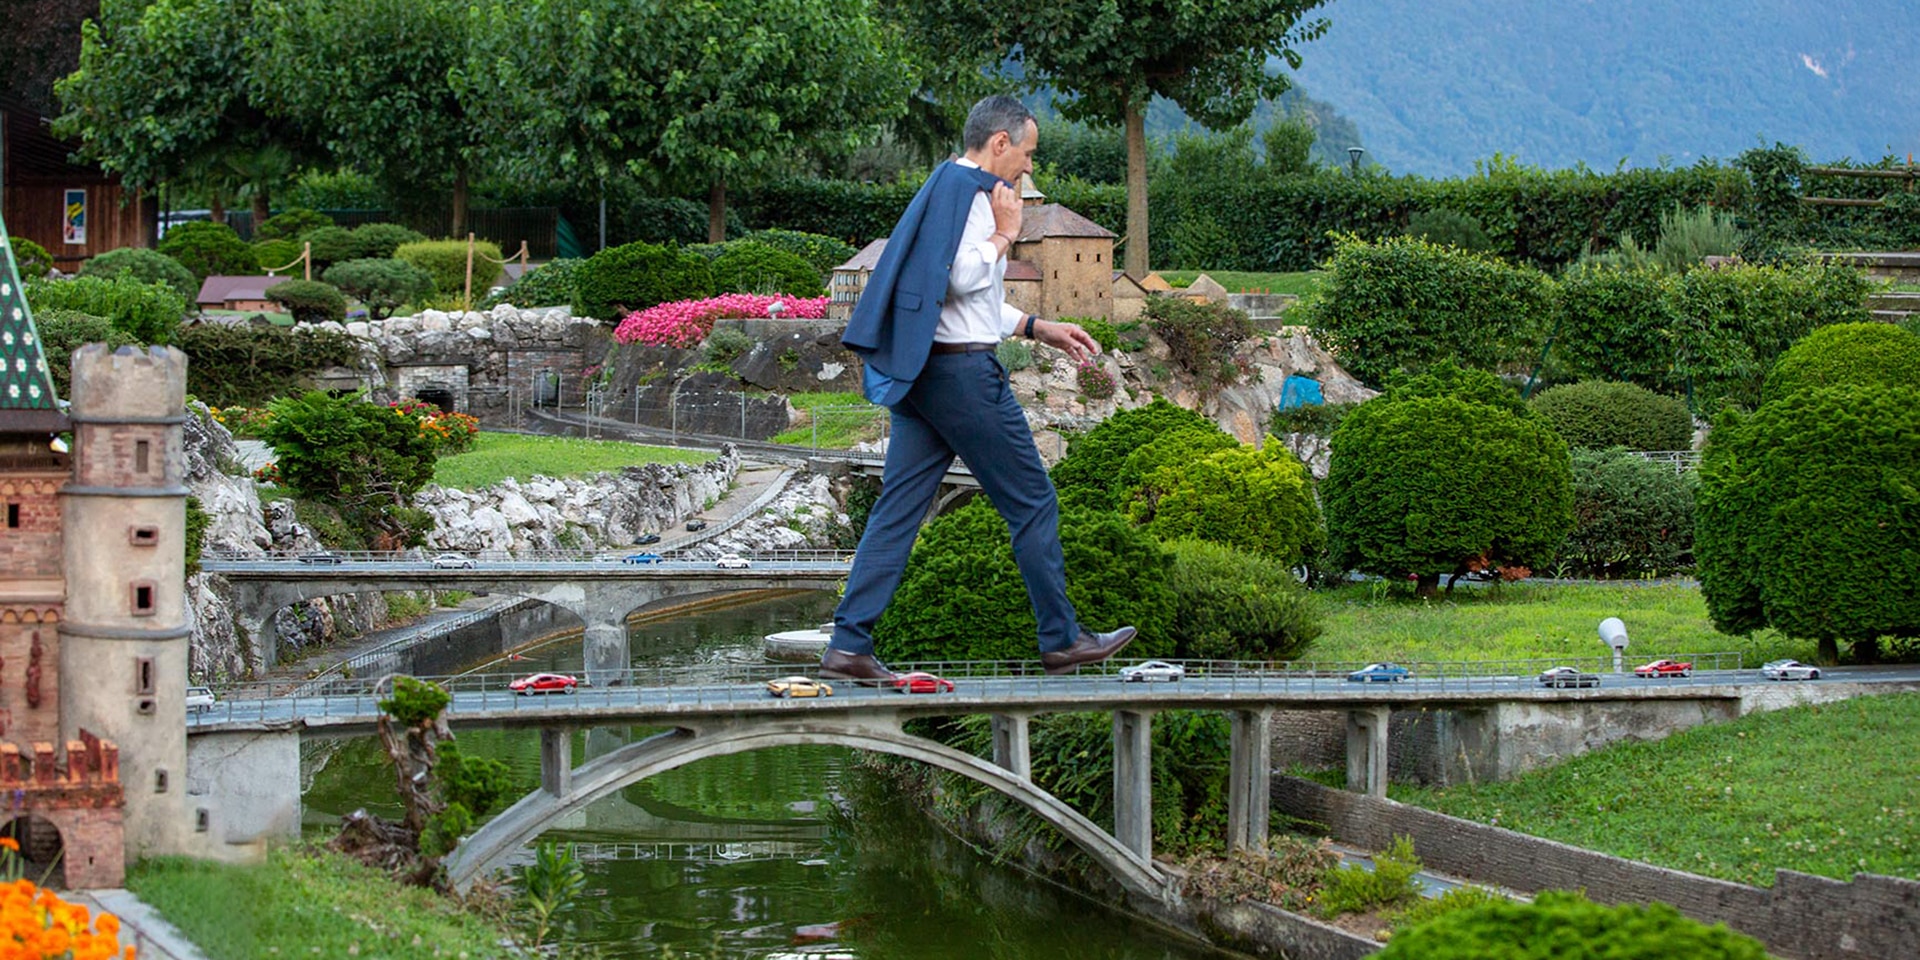  Le conseiller fédéral Ignazio Cassis, en train de marcher sur un viaduc autoroutier miniature, au Musée Swissminiatur.